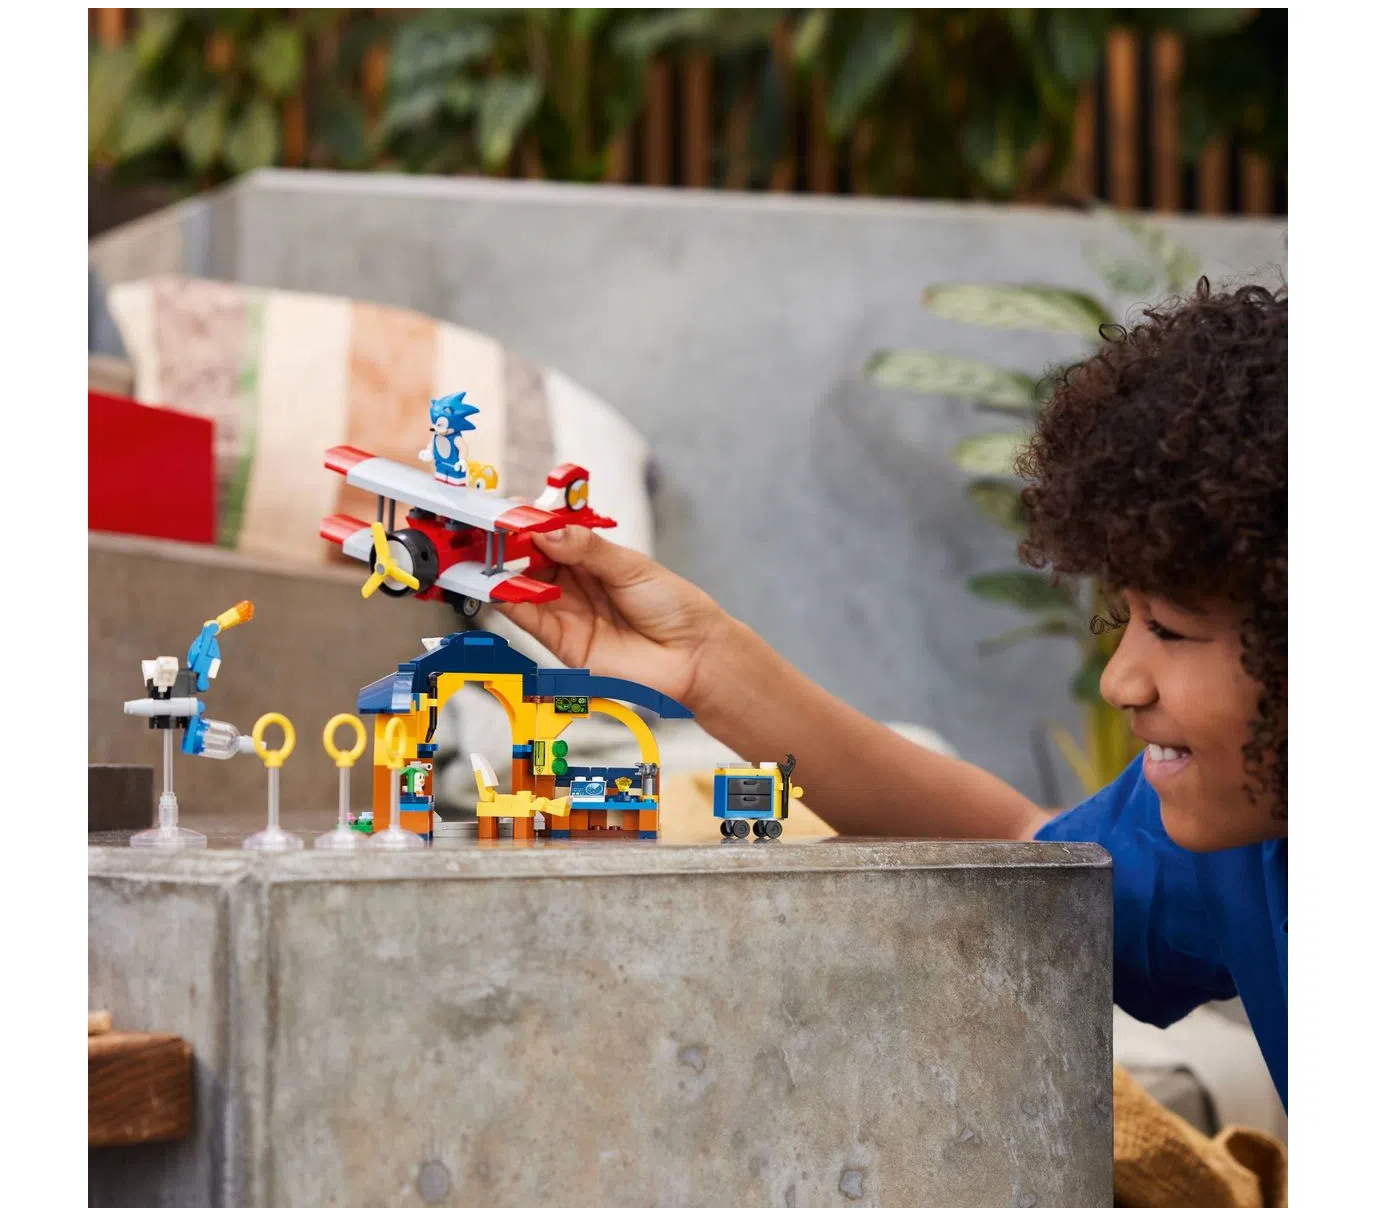 Blocos de Montar - Oficina do Tails e Aviao Tornado - Sonic LEGO DO BRASIL  - Shop Coopera